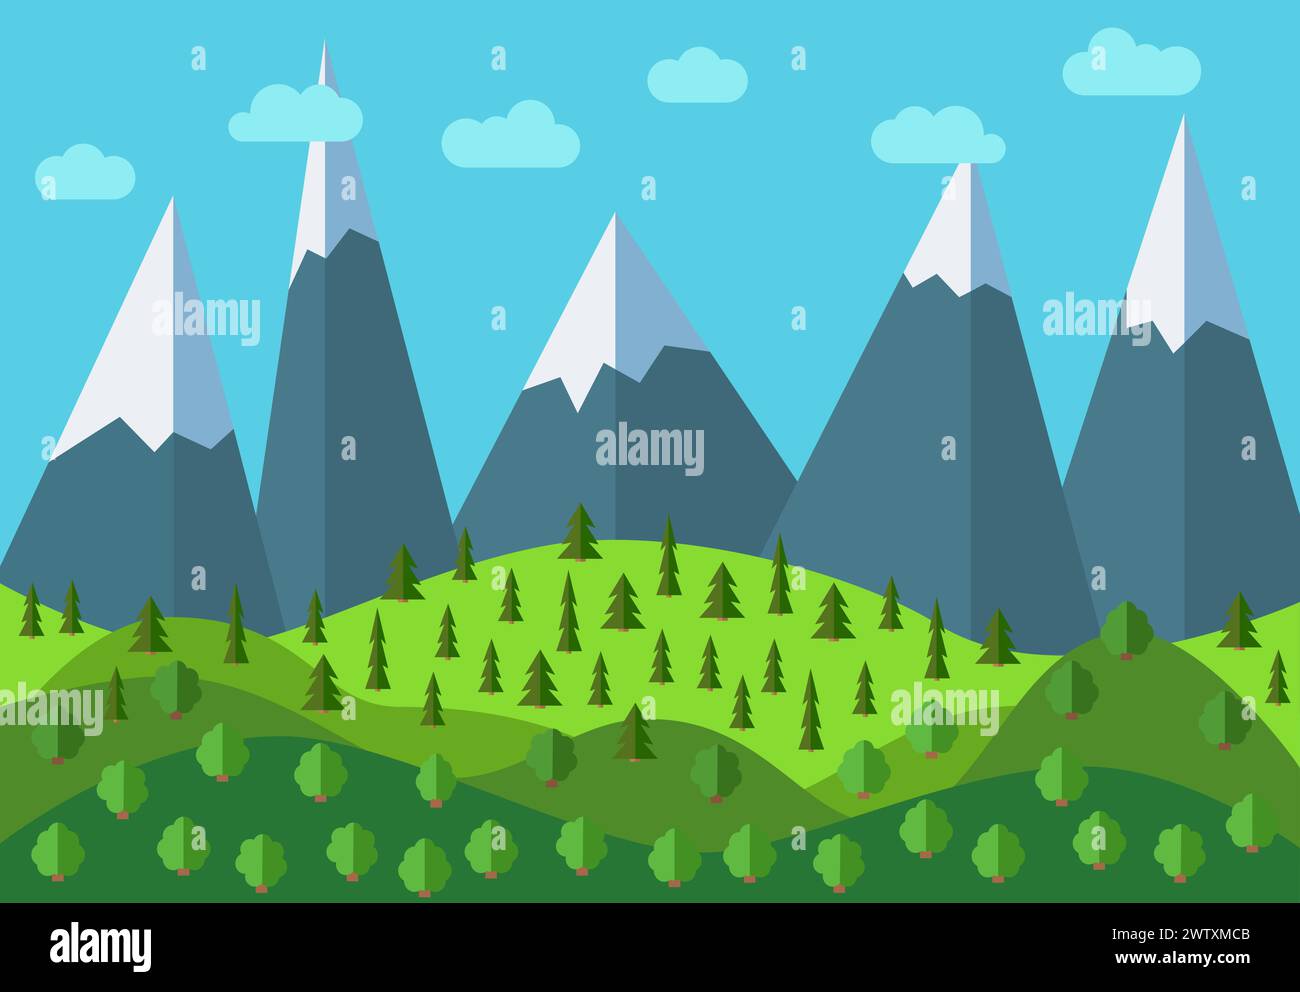 Vektor Panorama Berg Cartoon Landschaft. Natürliche Landschaft im flachen Stil mit blauem Himmel, Wolken, Bäumen, Hügeln und Bergen mit Schnee auf dem pe Stock Vektor